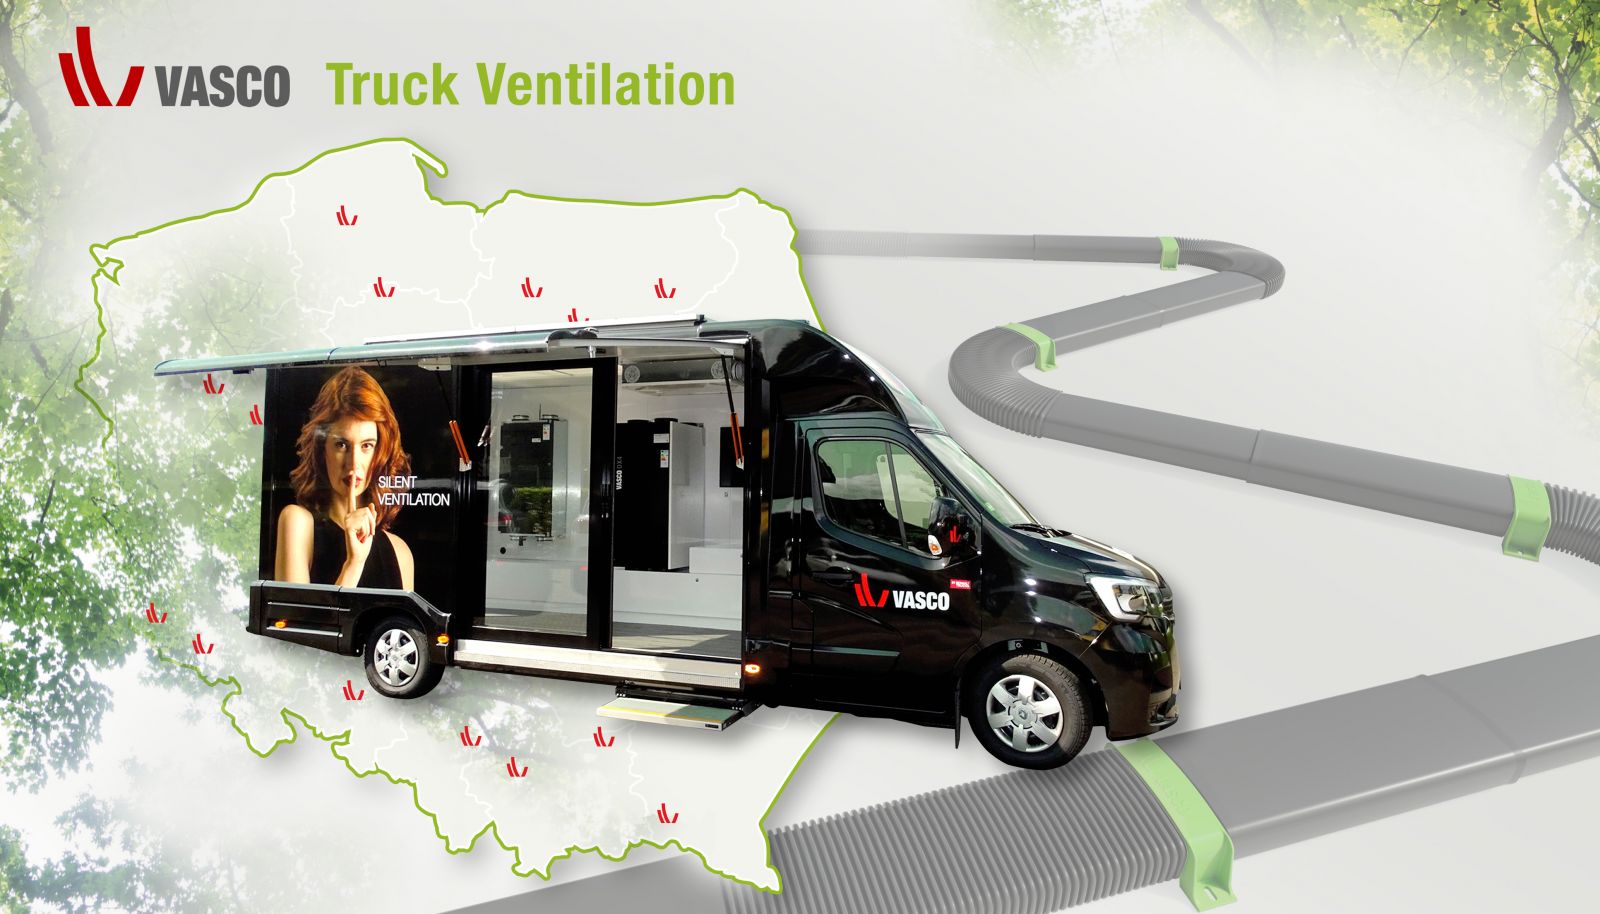 W trasę po Polsce wyruszył VASCO Truck Ventilation ze specjalną misją edukacyjną dla instalatorów.